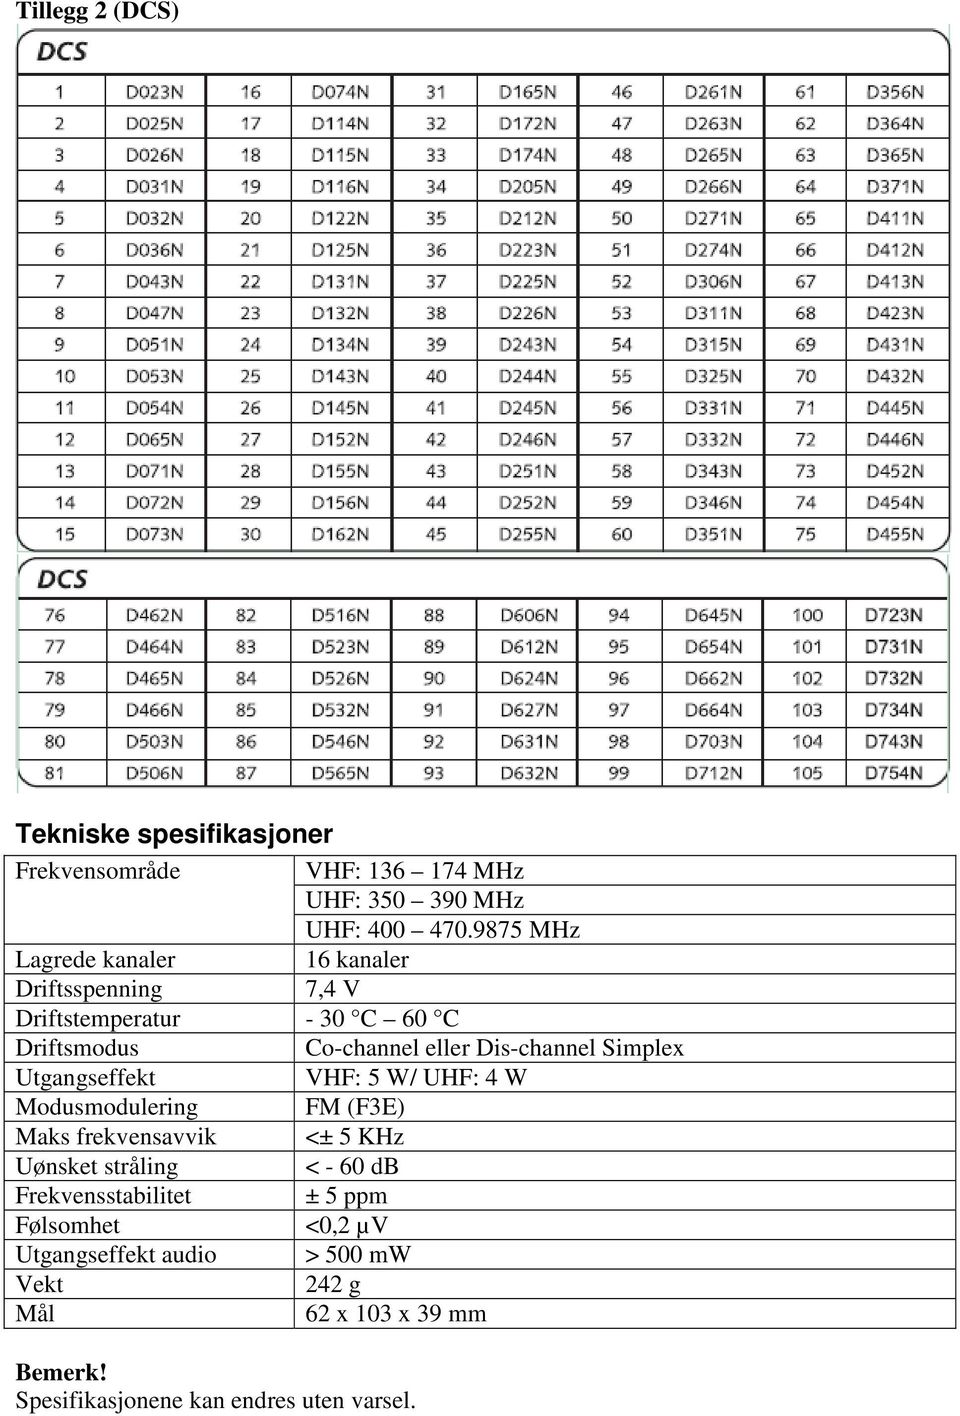 Dis-channel Simplex Utgangseffekt VHF: 5 W/ UHF: 4 W Modusmodulering FM (F3E) Maks frekvensavvik <± 5 KHz Uønsket stråling <